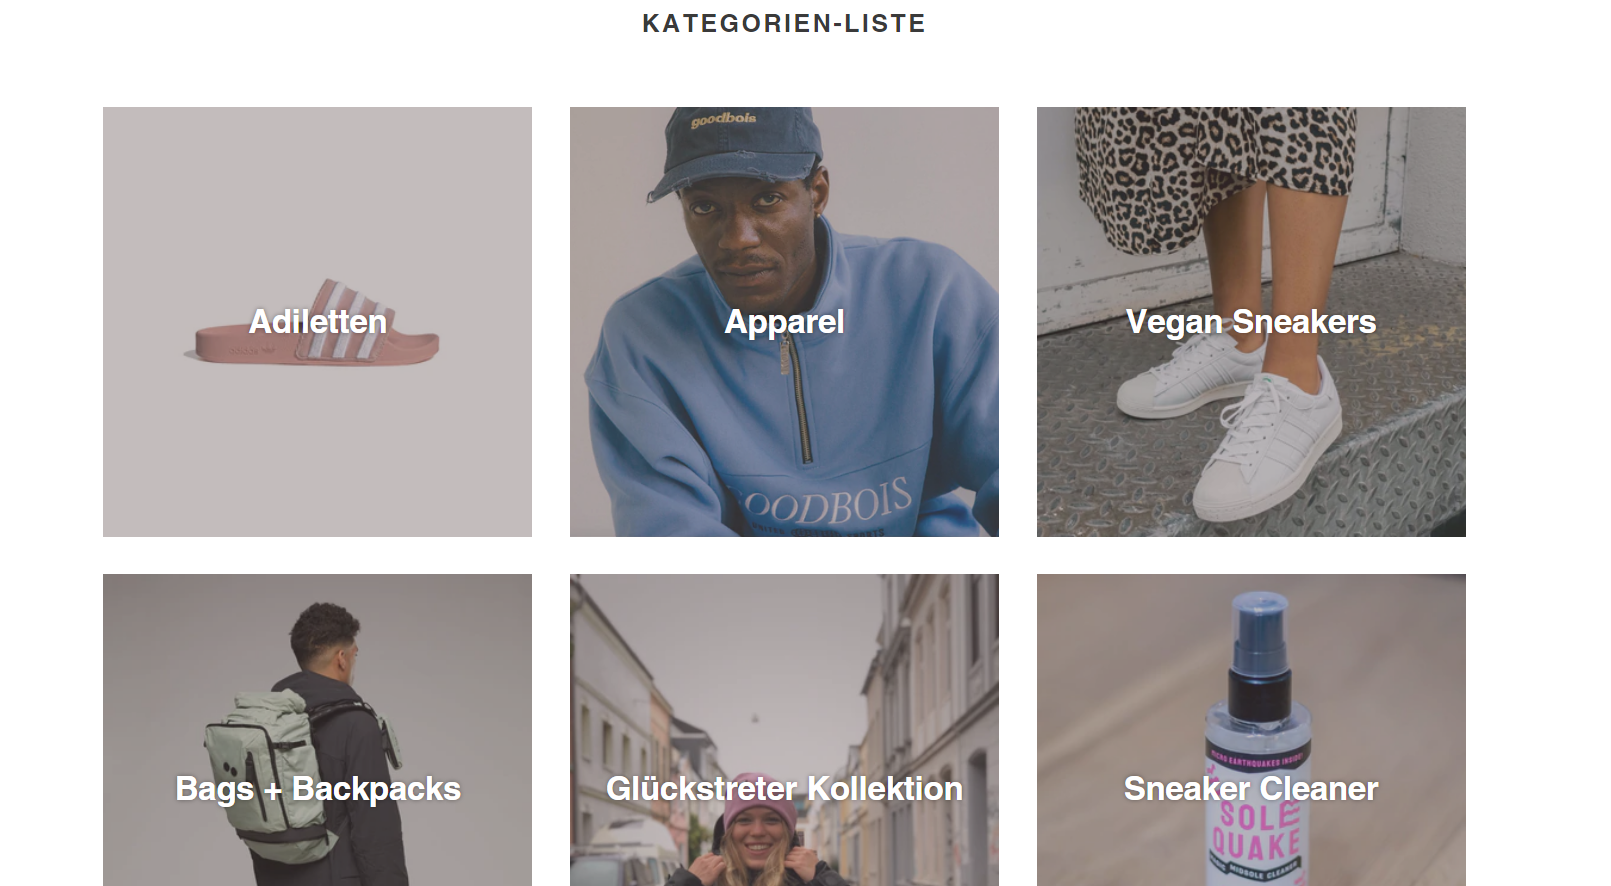 Das Fashion E-Commerce Glückstreter spiegelt mit seiner Website sein Kiez-Geschäft wider. 